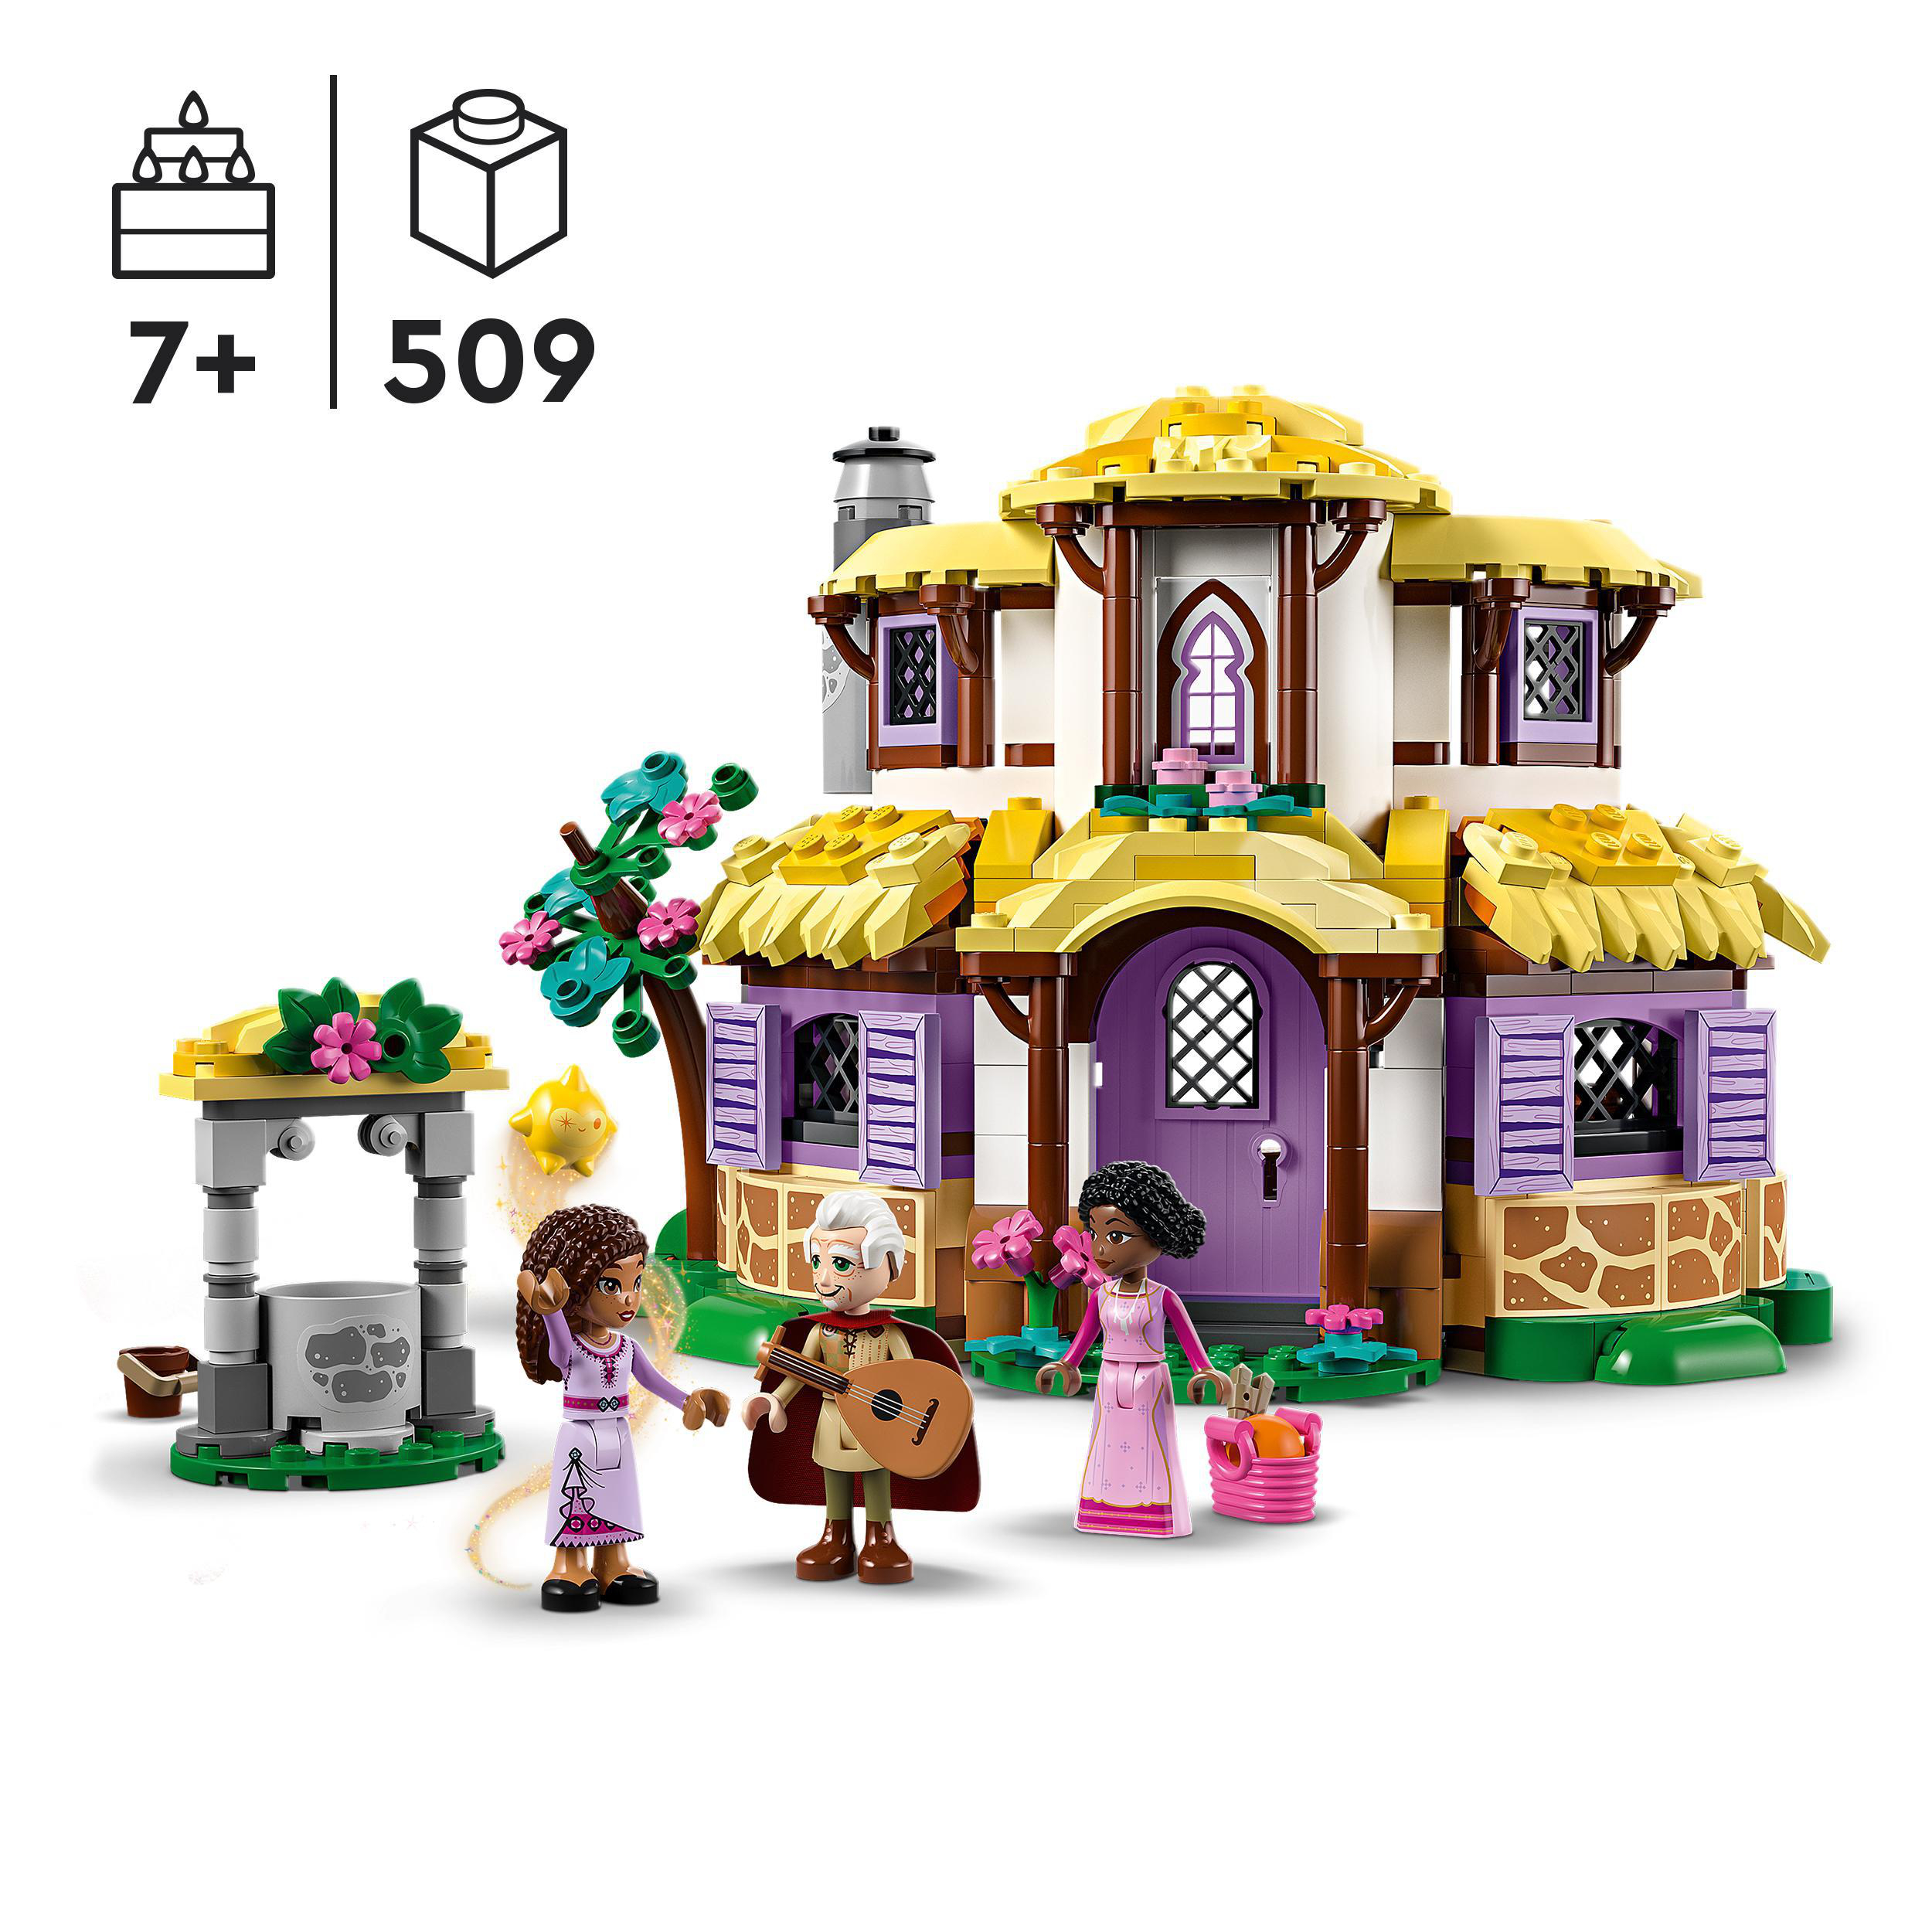 Bausatz, Häuschen Mehrfarbig 43231 Ashas LEGO Disney